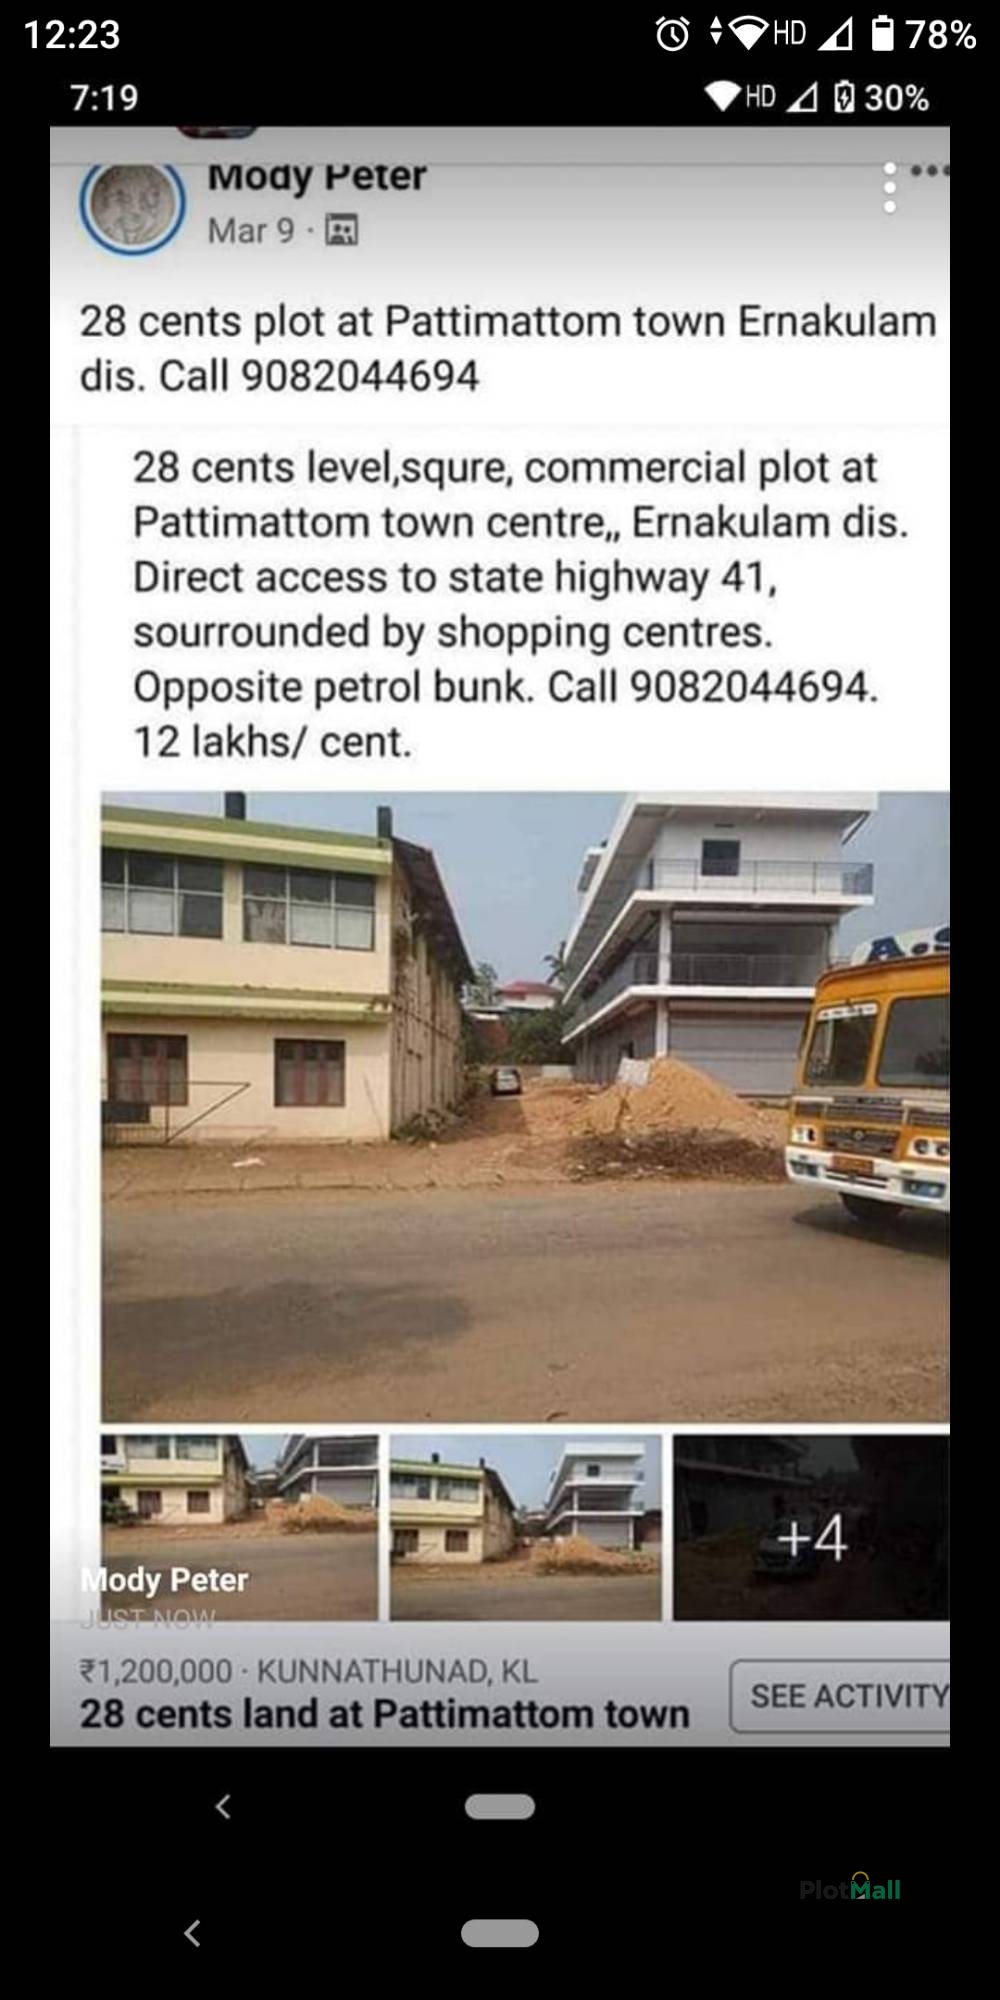 Commercial Land for Sale in Pattimattom Town, Pattimattam